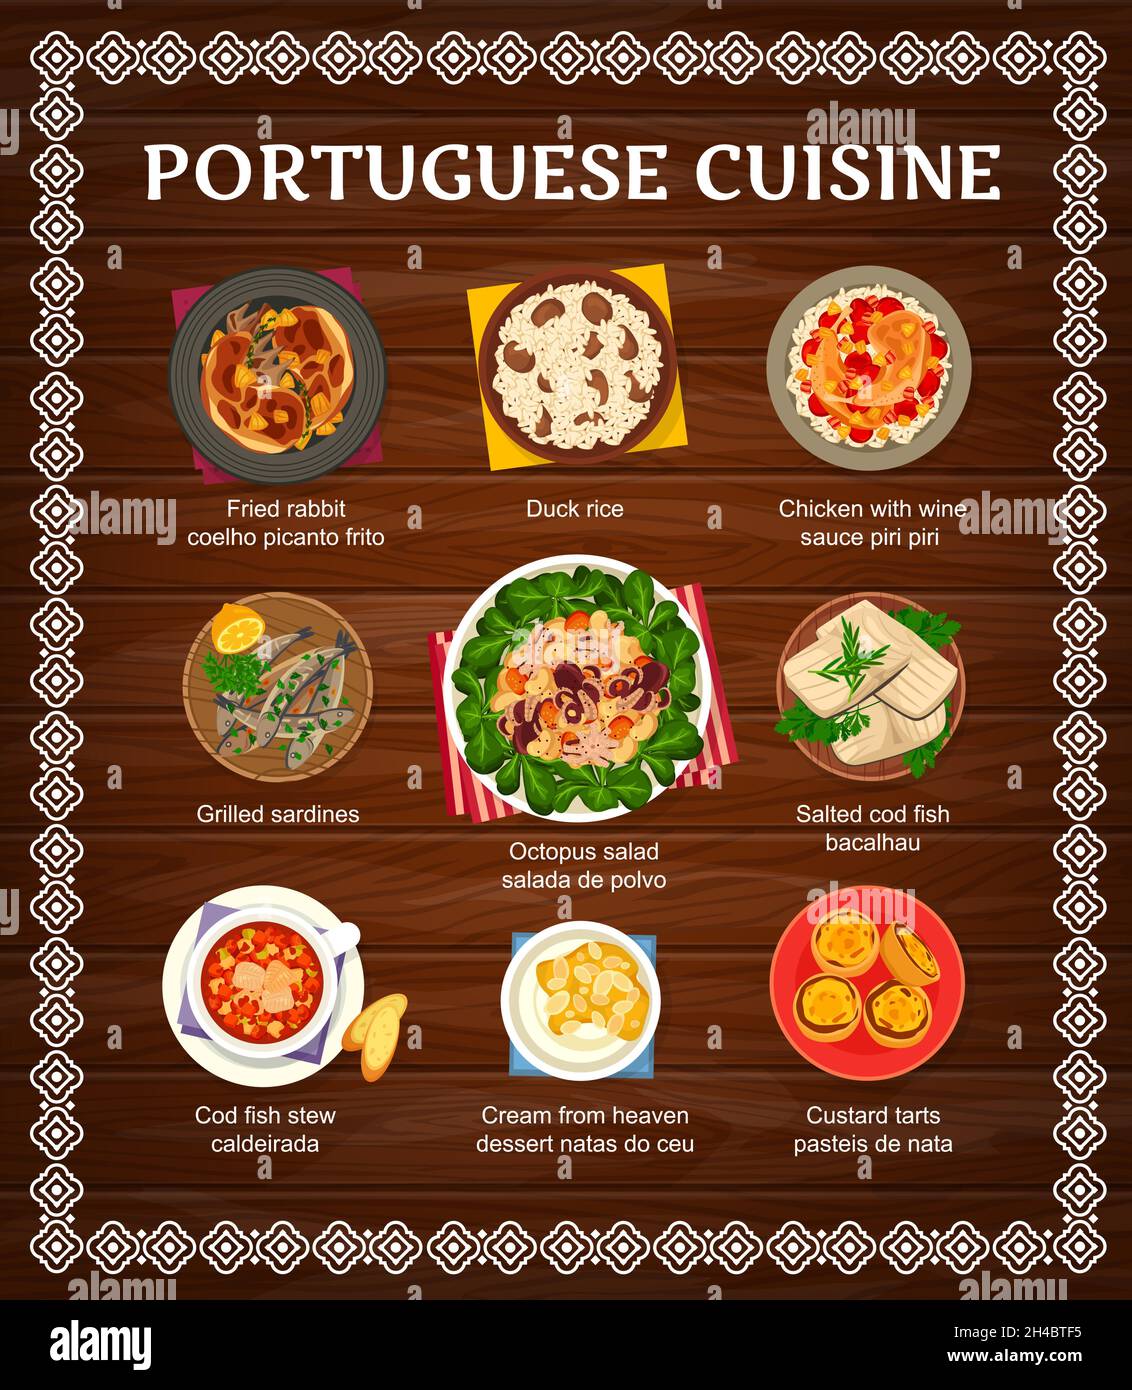 Portugiesische Gerichte, Gerichte und Gerichte. Puddingkuchen, himmlische Creme und Entenreis, gegrillte Sardinen, Huhn mit Piri Piri-Sauce und gebratenes Kaninchen Stock Vektor